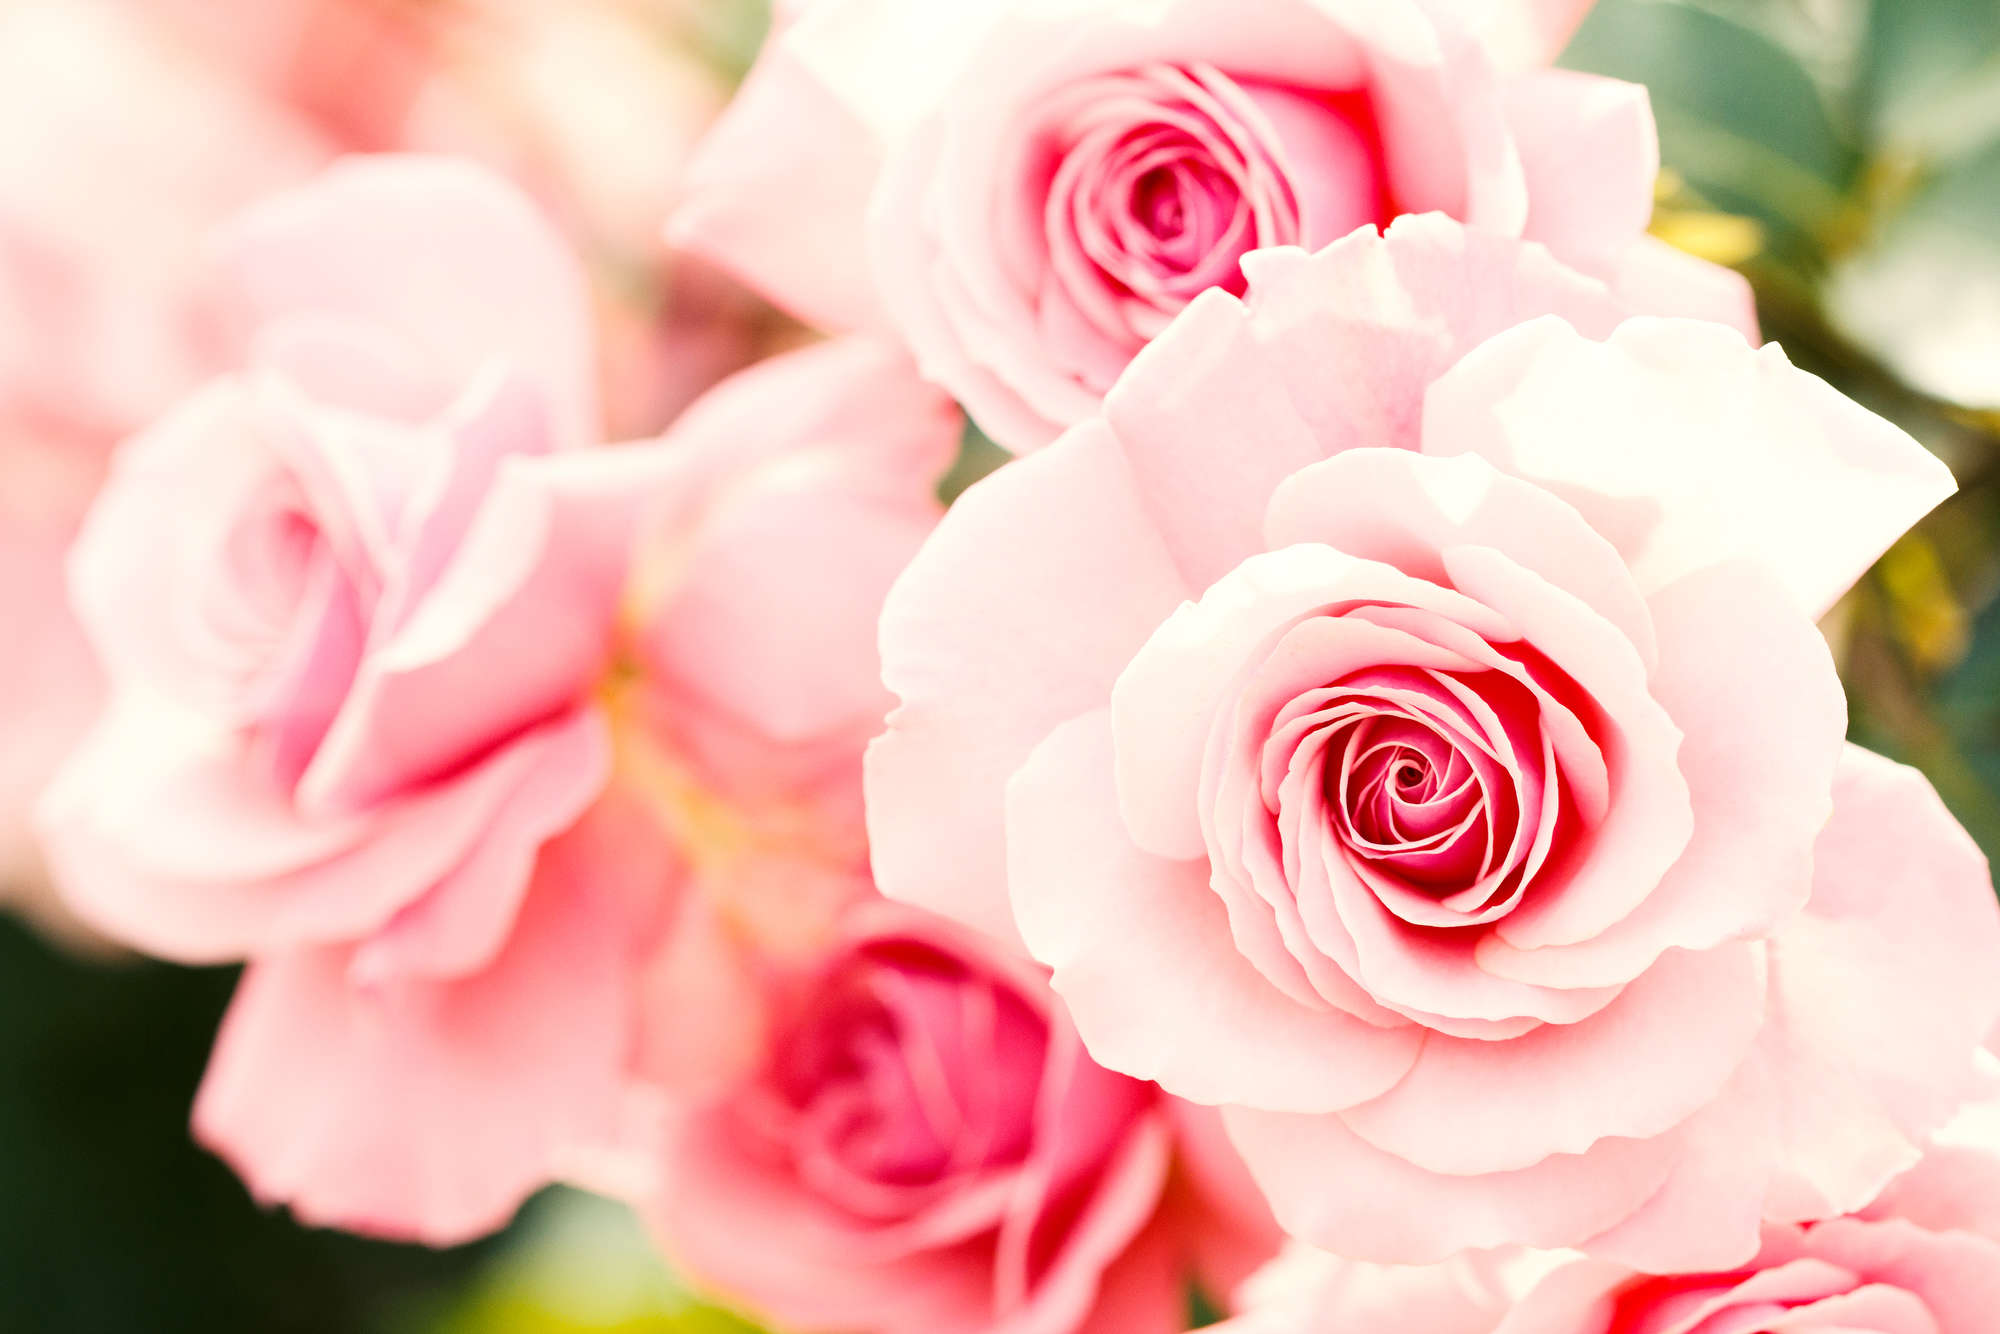             Papier peint végétal roses sur intissé lisse premium
        